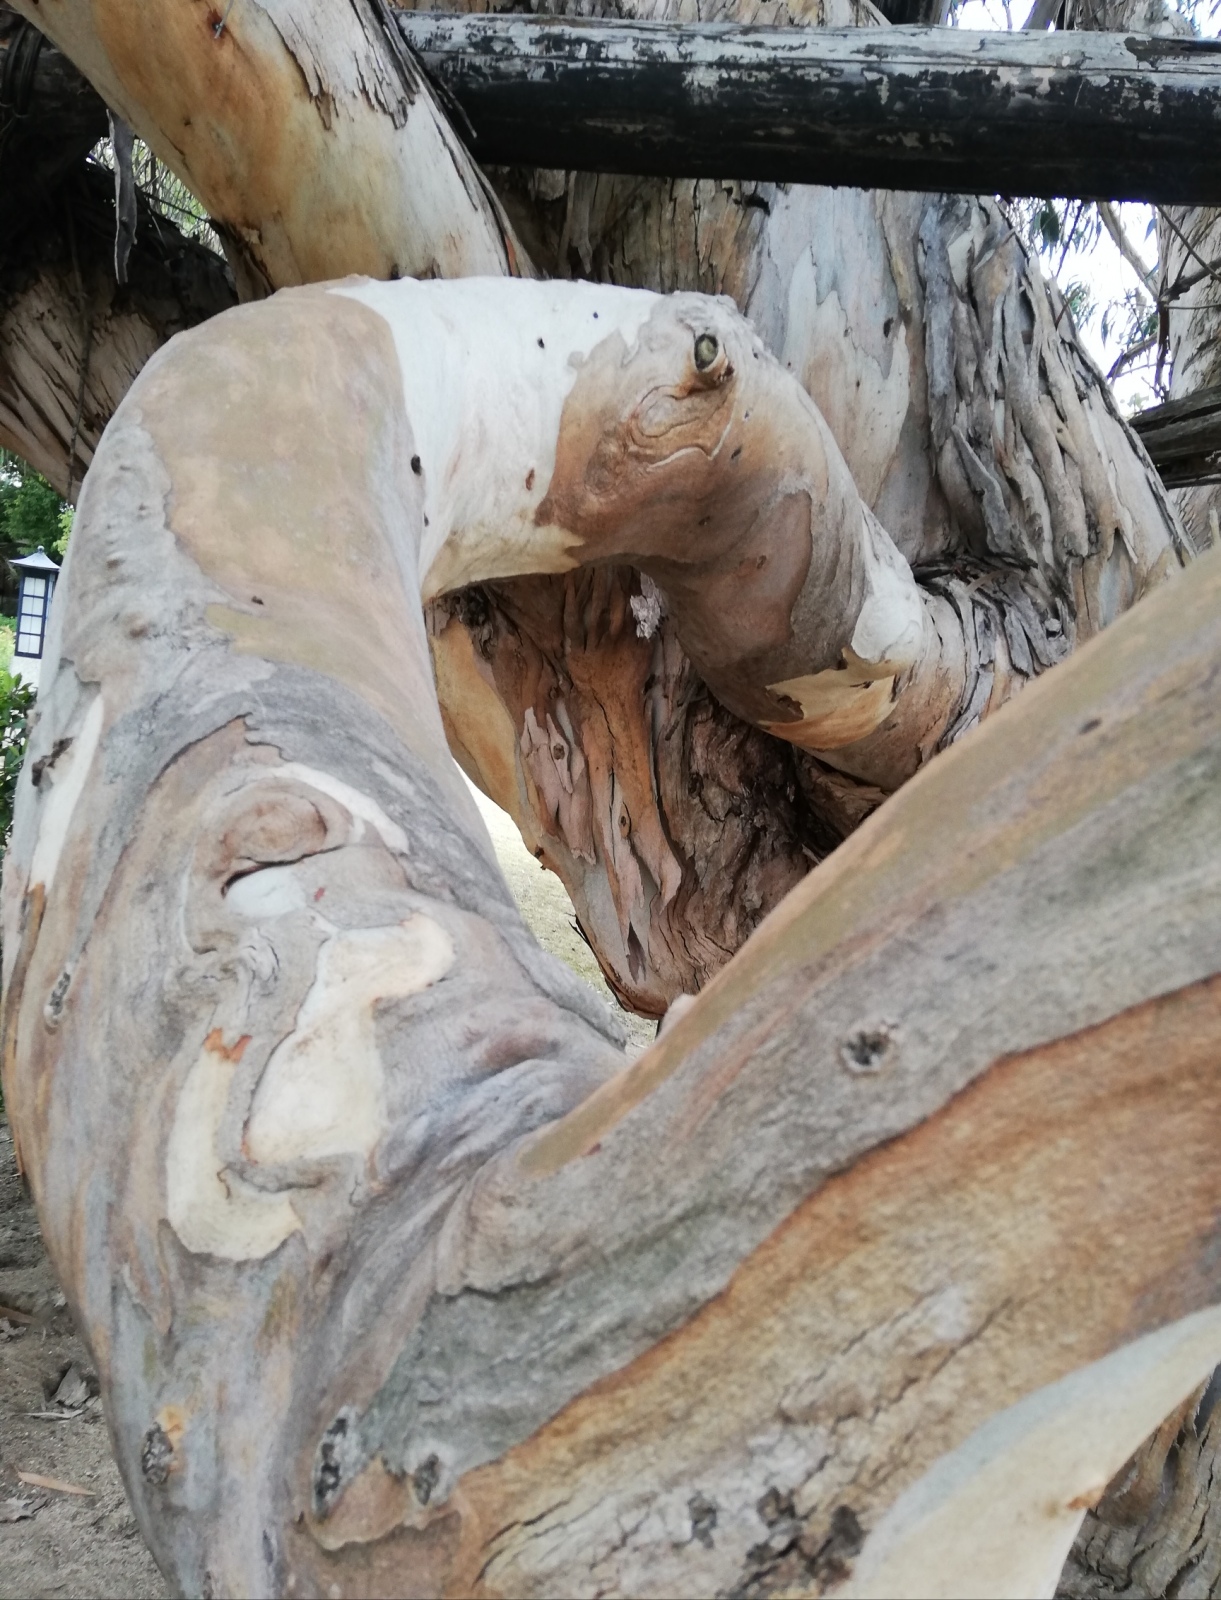 Wood of eucalyptus